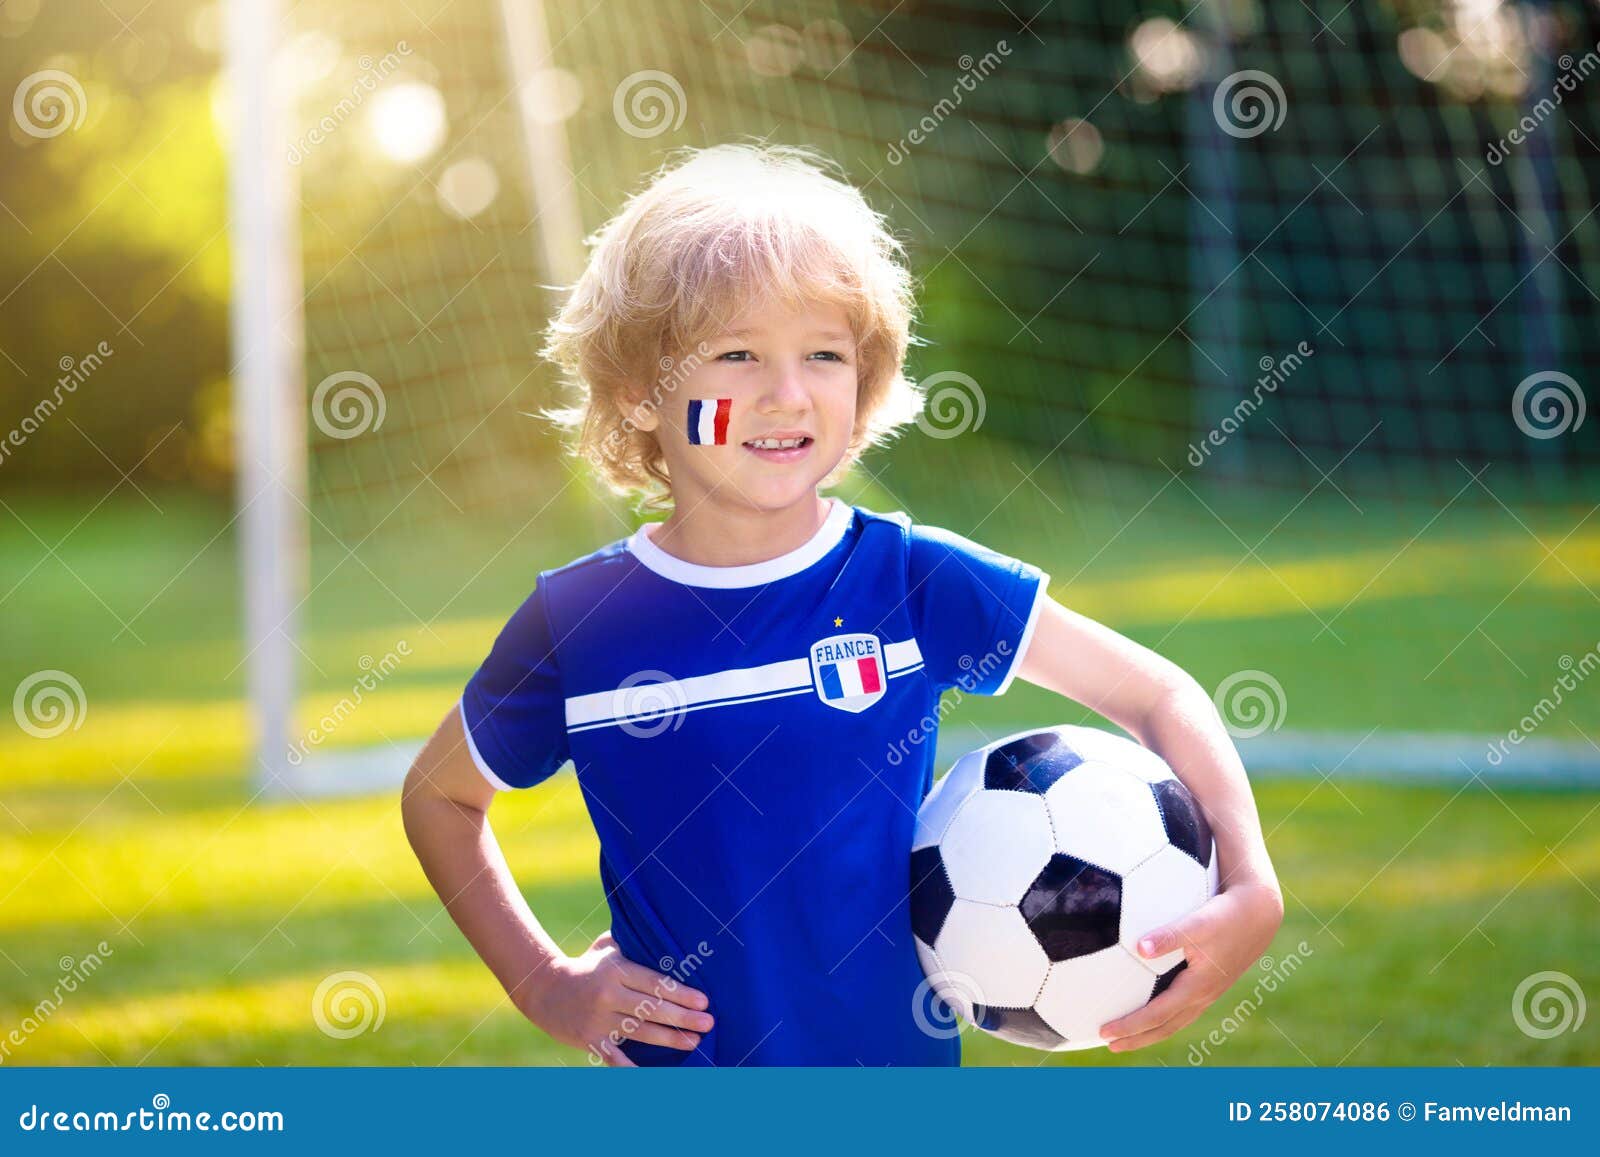 Ragazzi Francesi Di Calcio. I Bambini Giocano a Calcio Fotografia Stock -  Immagine di tazza, erba: 258074086